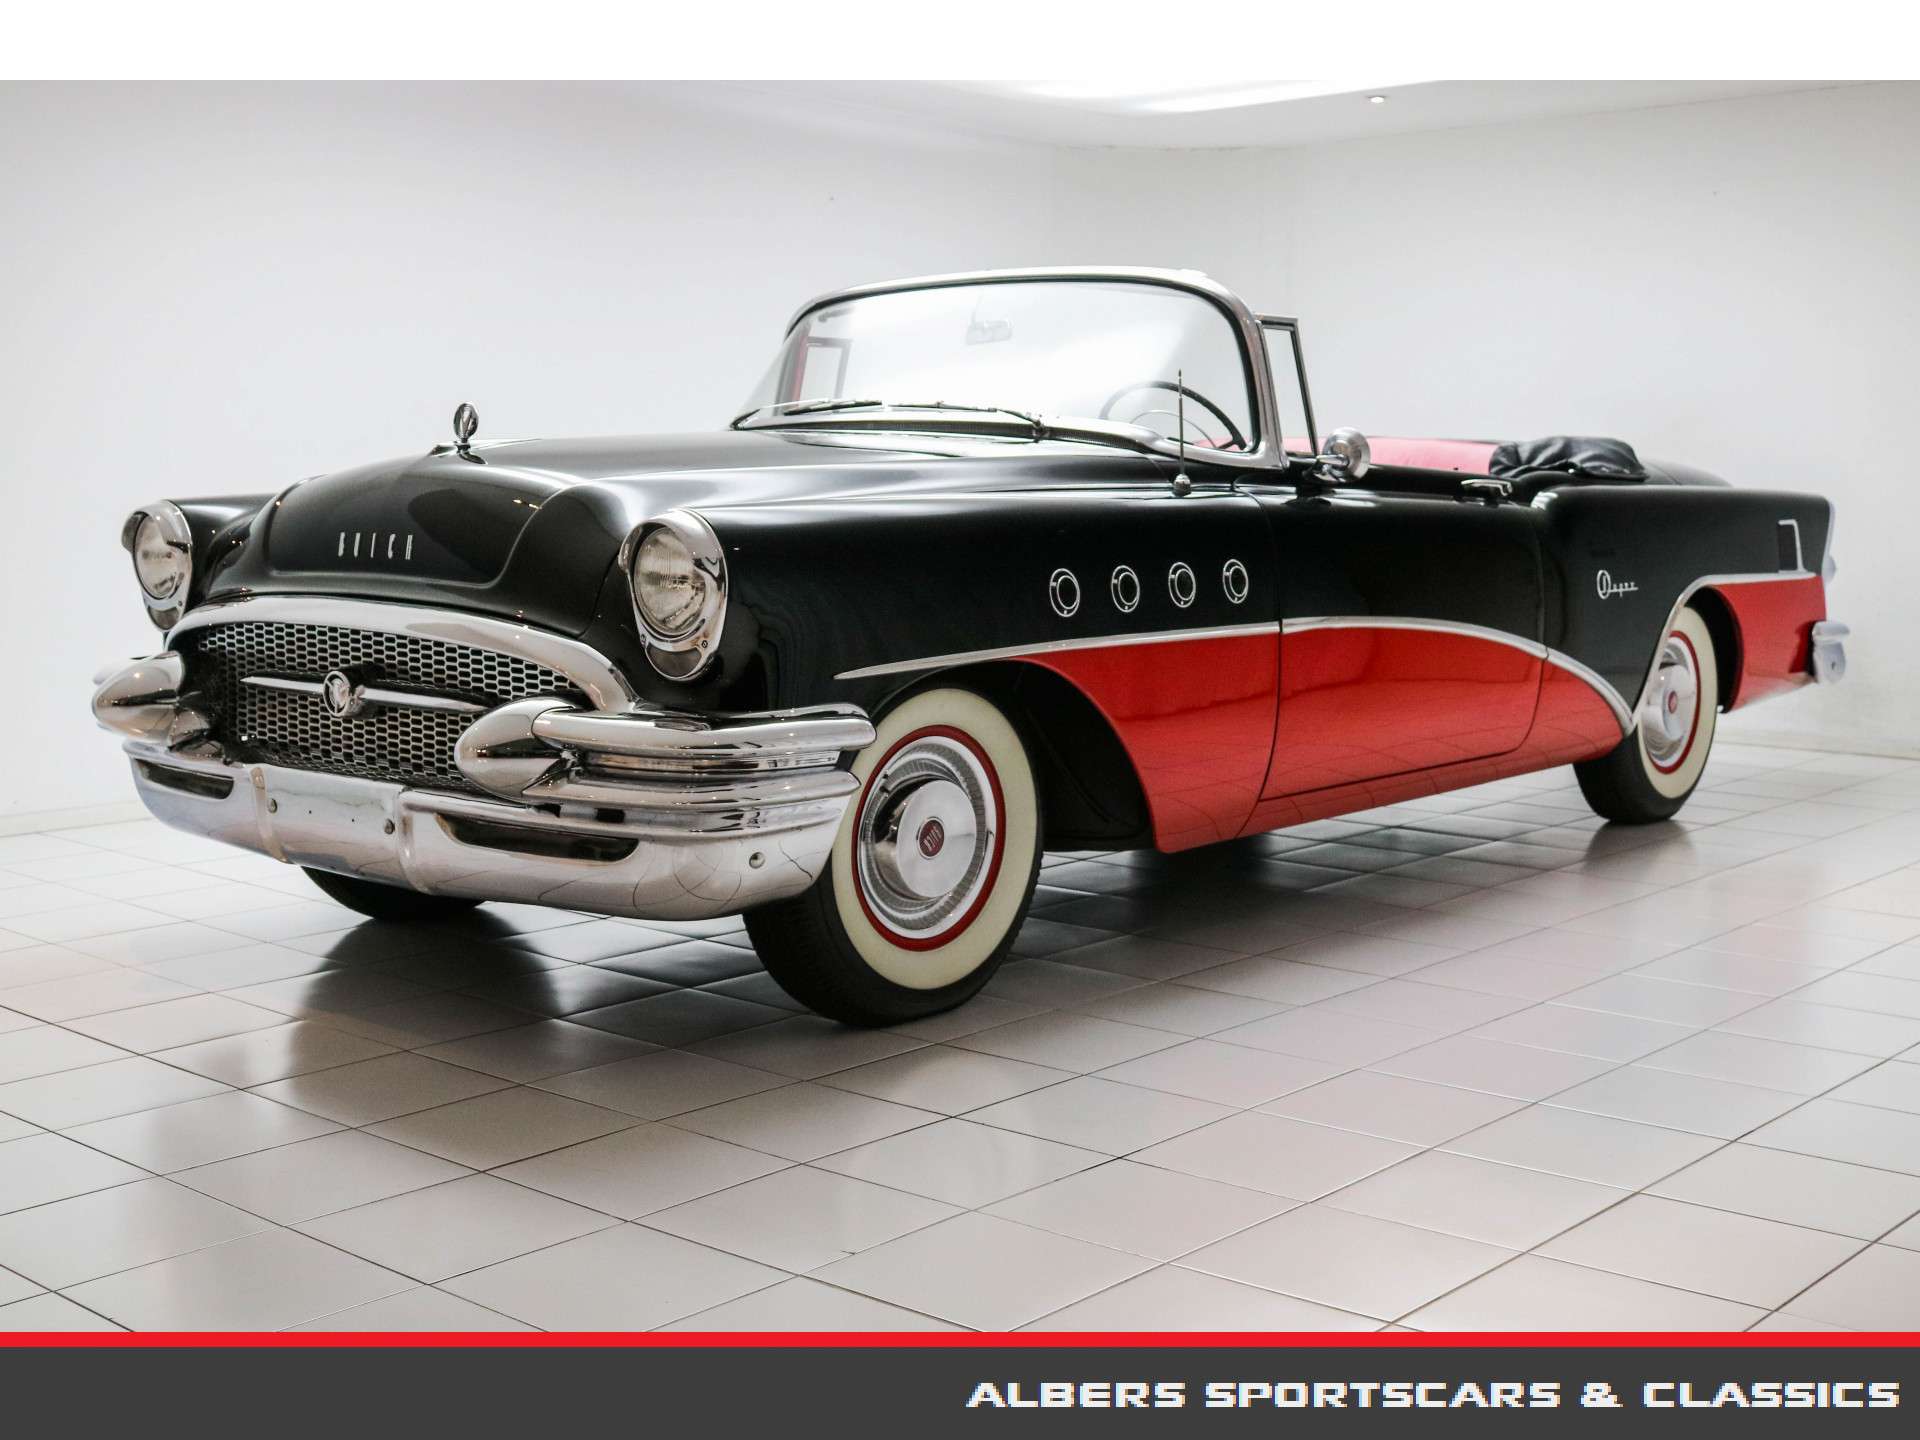 Buick Roadmaster Convertible in Black antique / classic in MUSSELKANAAL for € 55,000.-